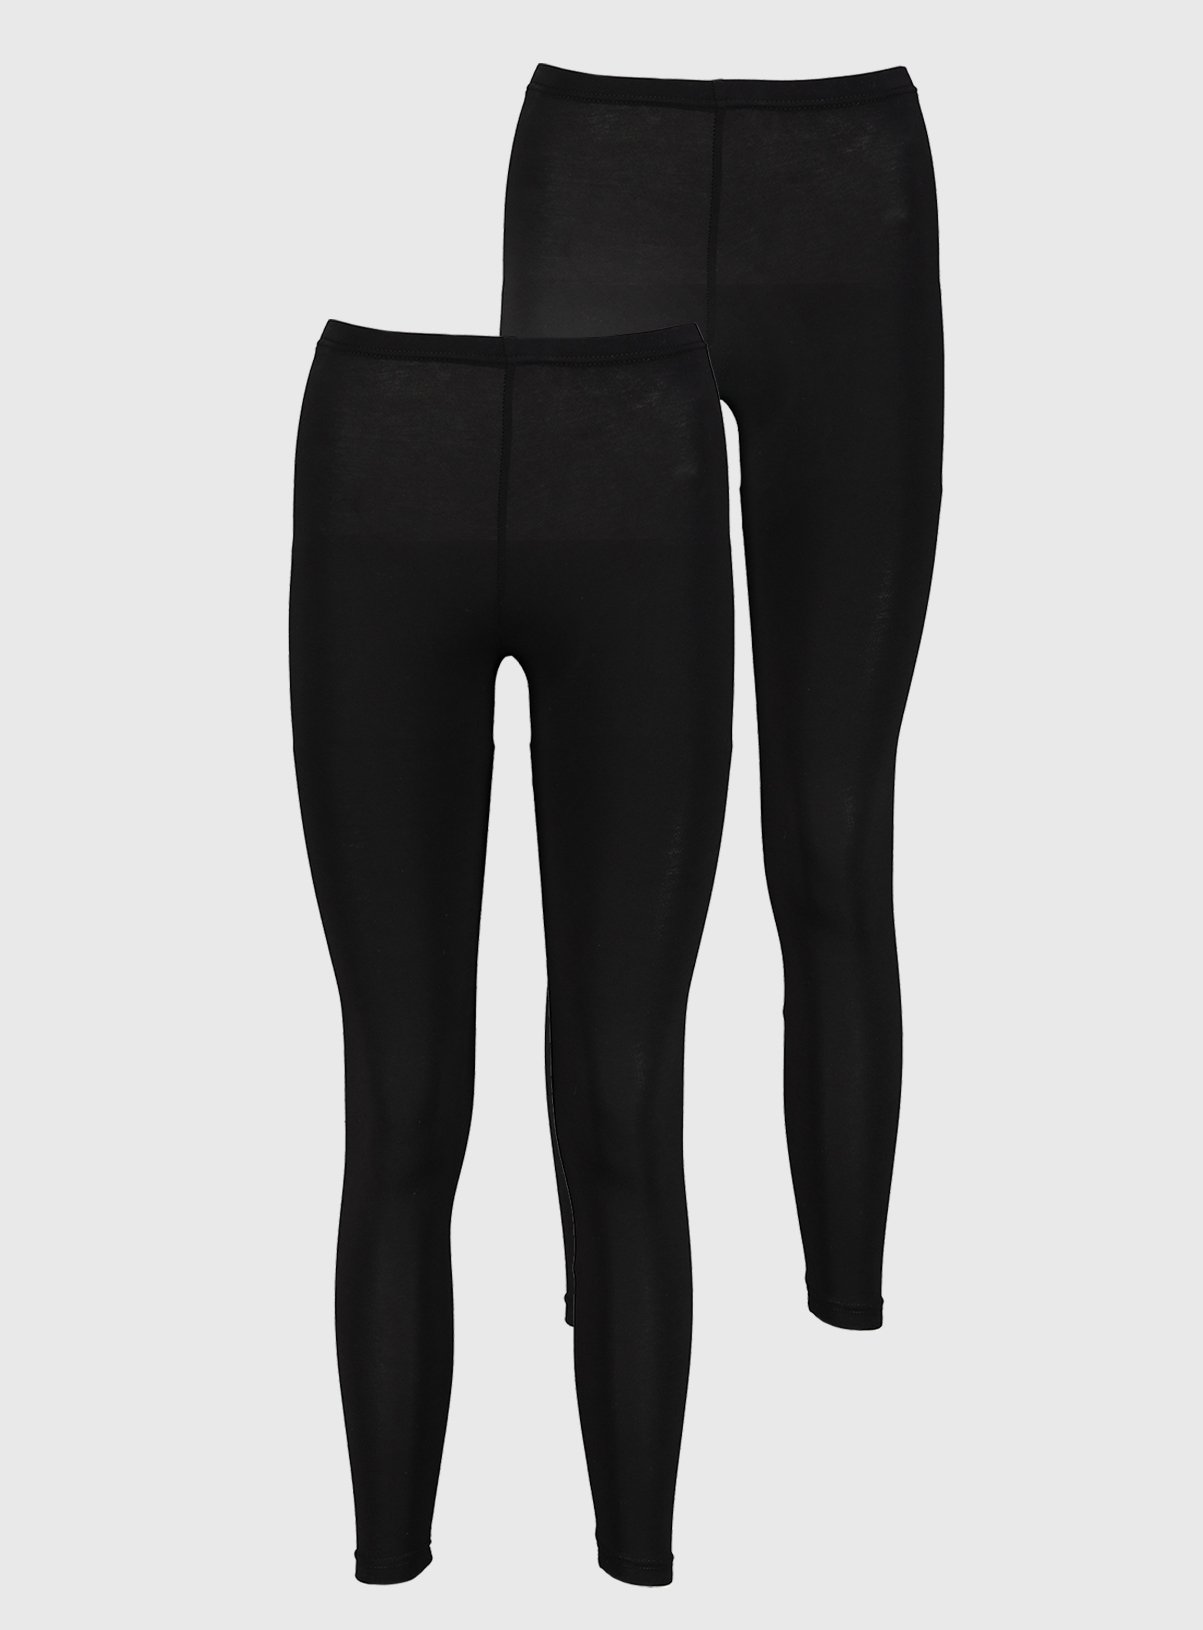 where can i buy black leggings